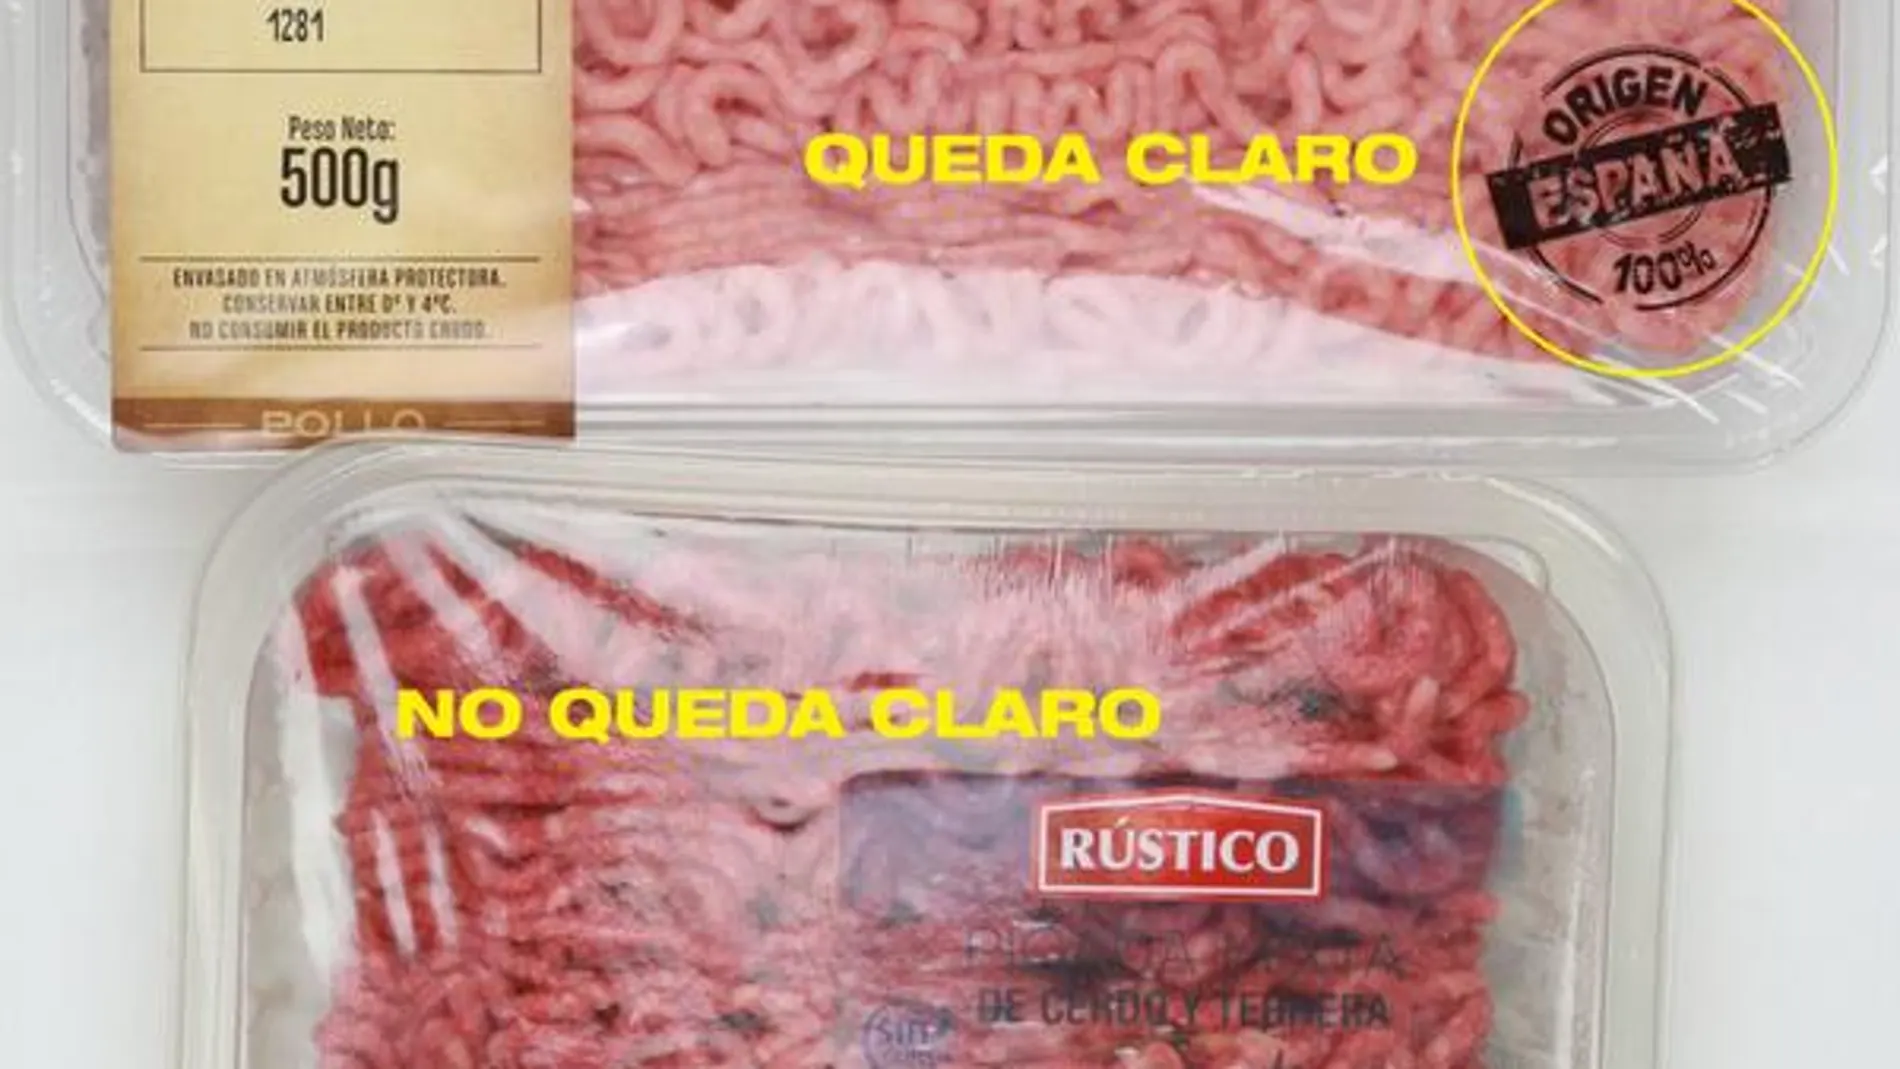 La OCU ha distribuido esta imagen con dos ejemplos de lo que debe y no debe ser la información del empaquetado de la carne